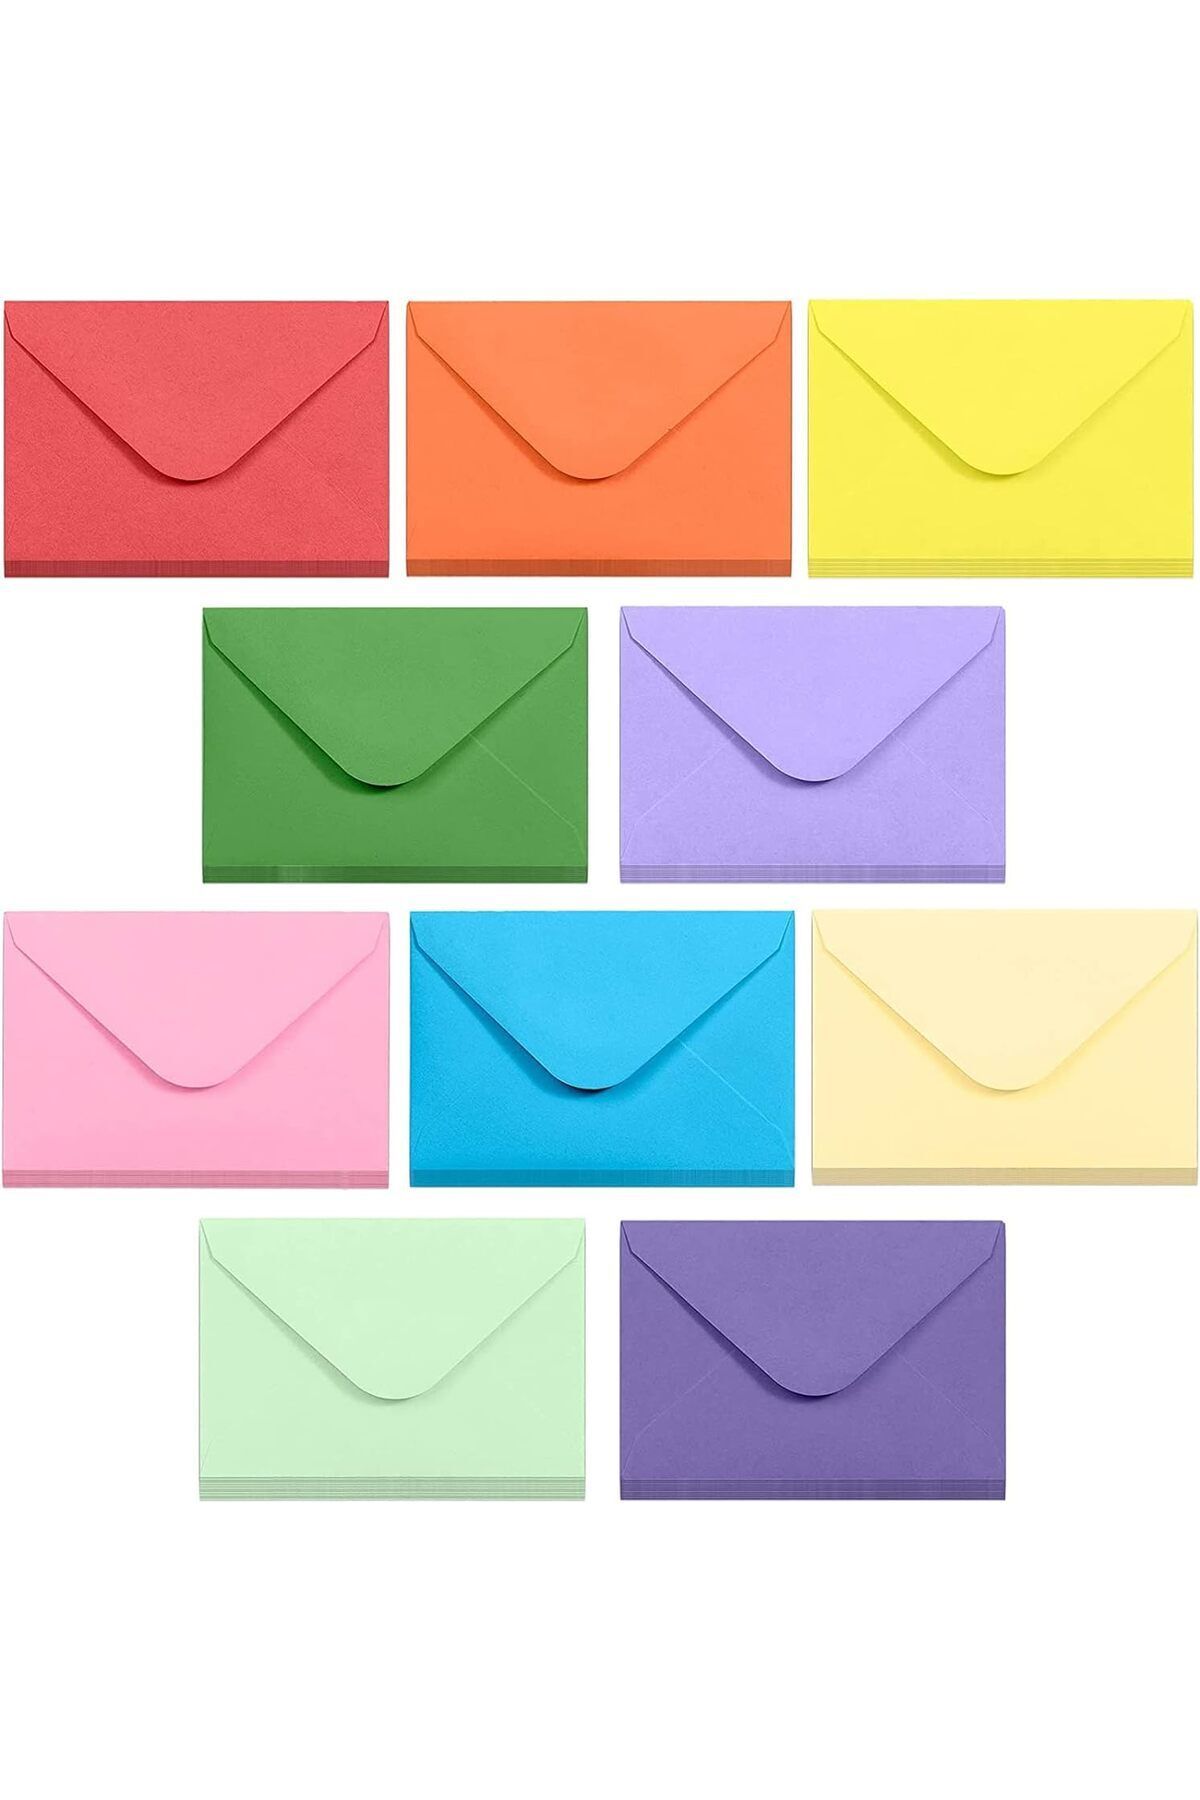 arsem 10’lu Karışık Renkli Mektup Zarf Seti Kartpostal Davetiye Organizasyon Hediye Doğum Günü (13x18cm)